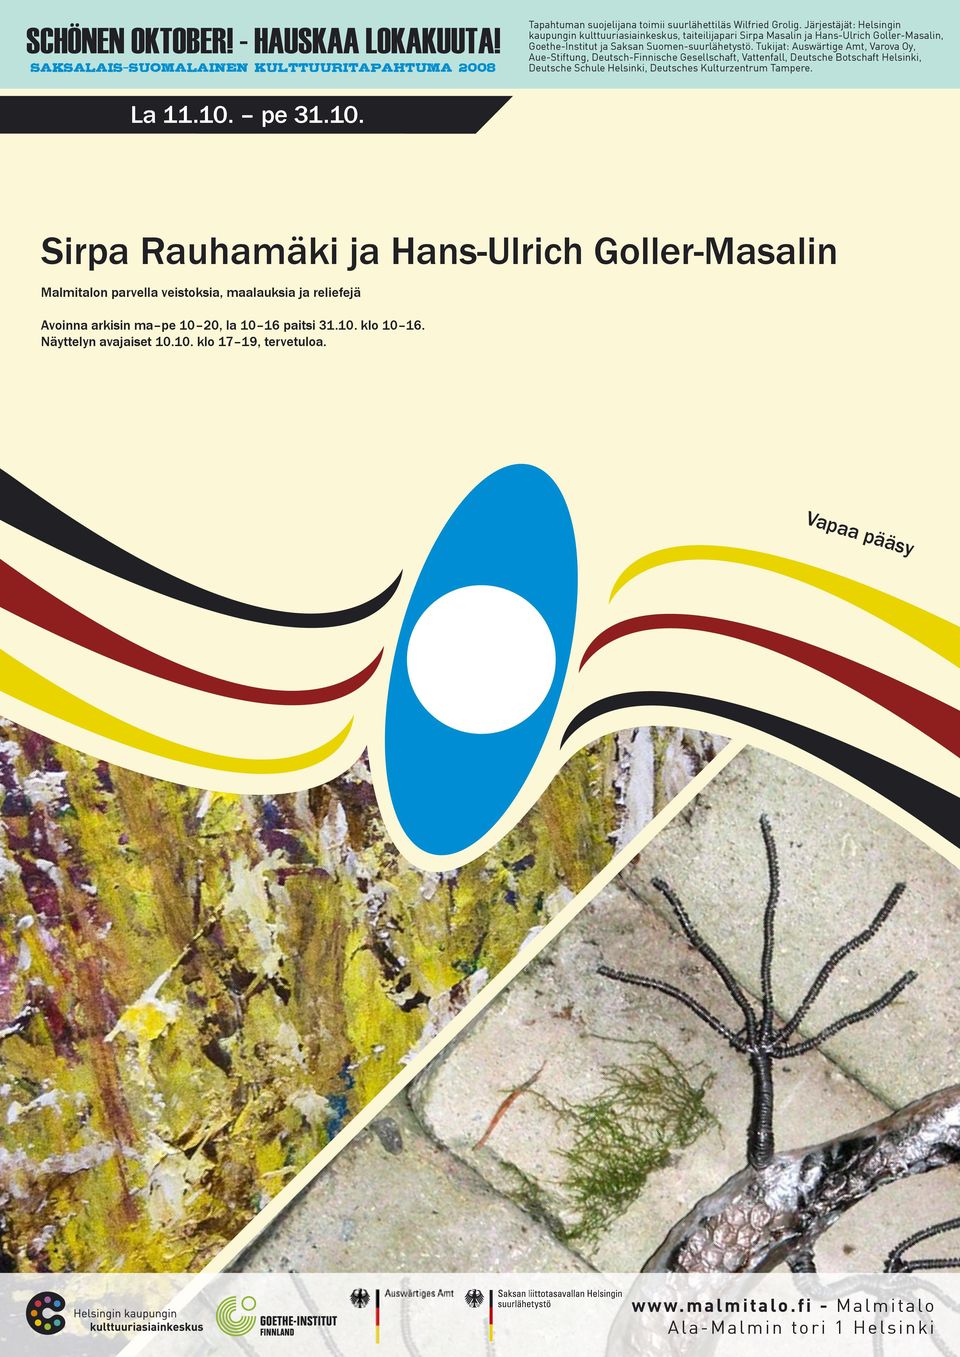 Sirpa Rauhamäki ja Hans-Ulrich Goller-Masalin Malmitalon